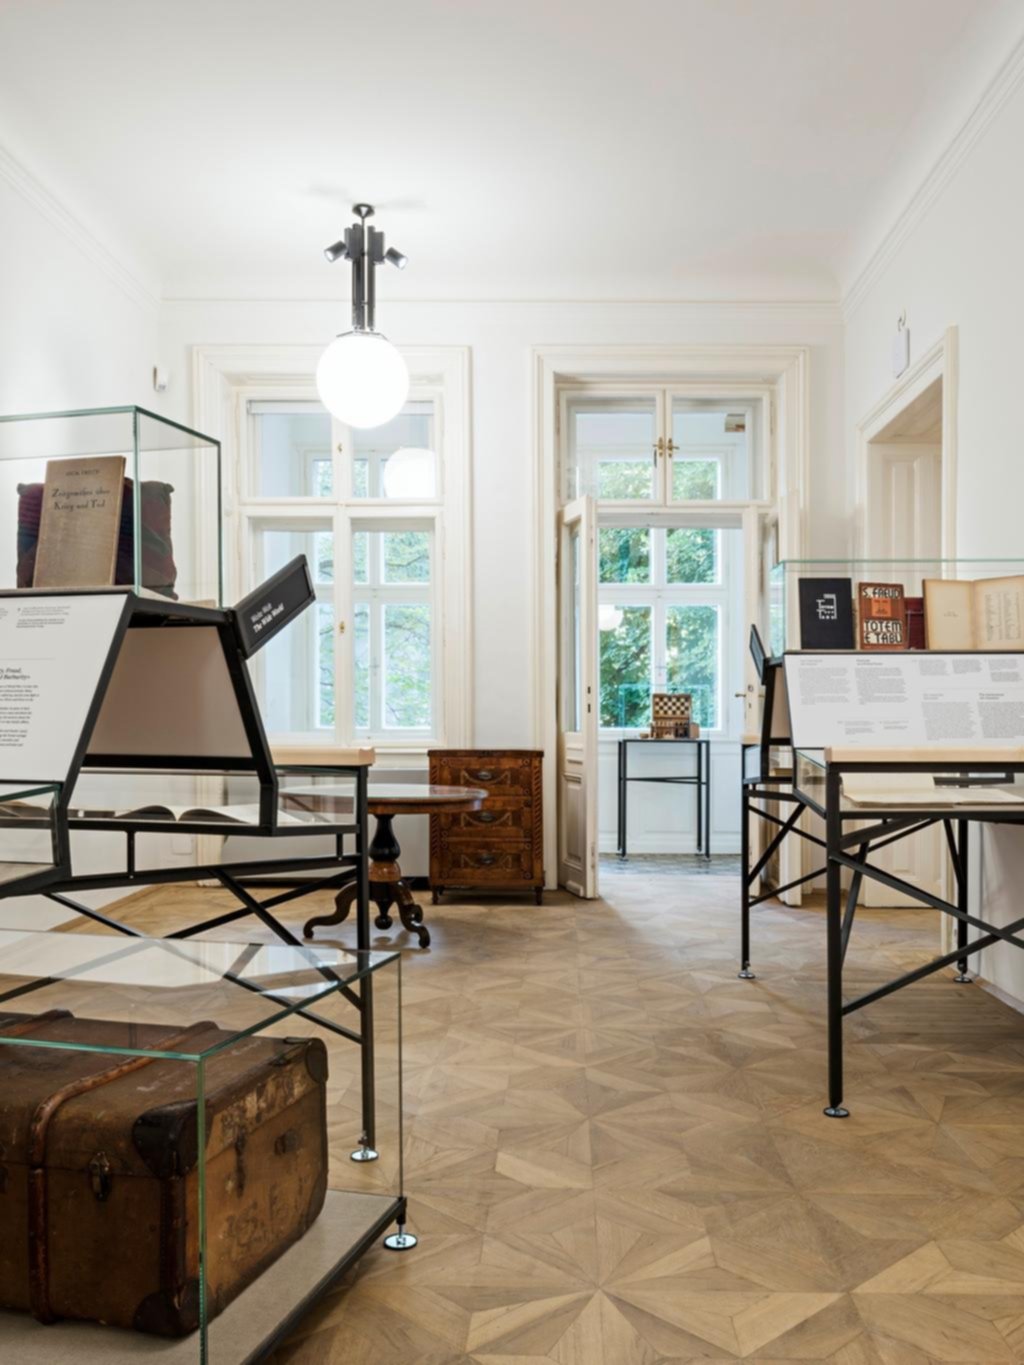 El museo Freud de Viena, con el vacío como “objeto” clave